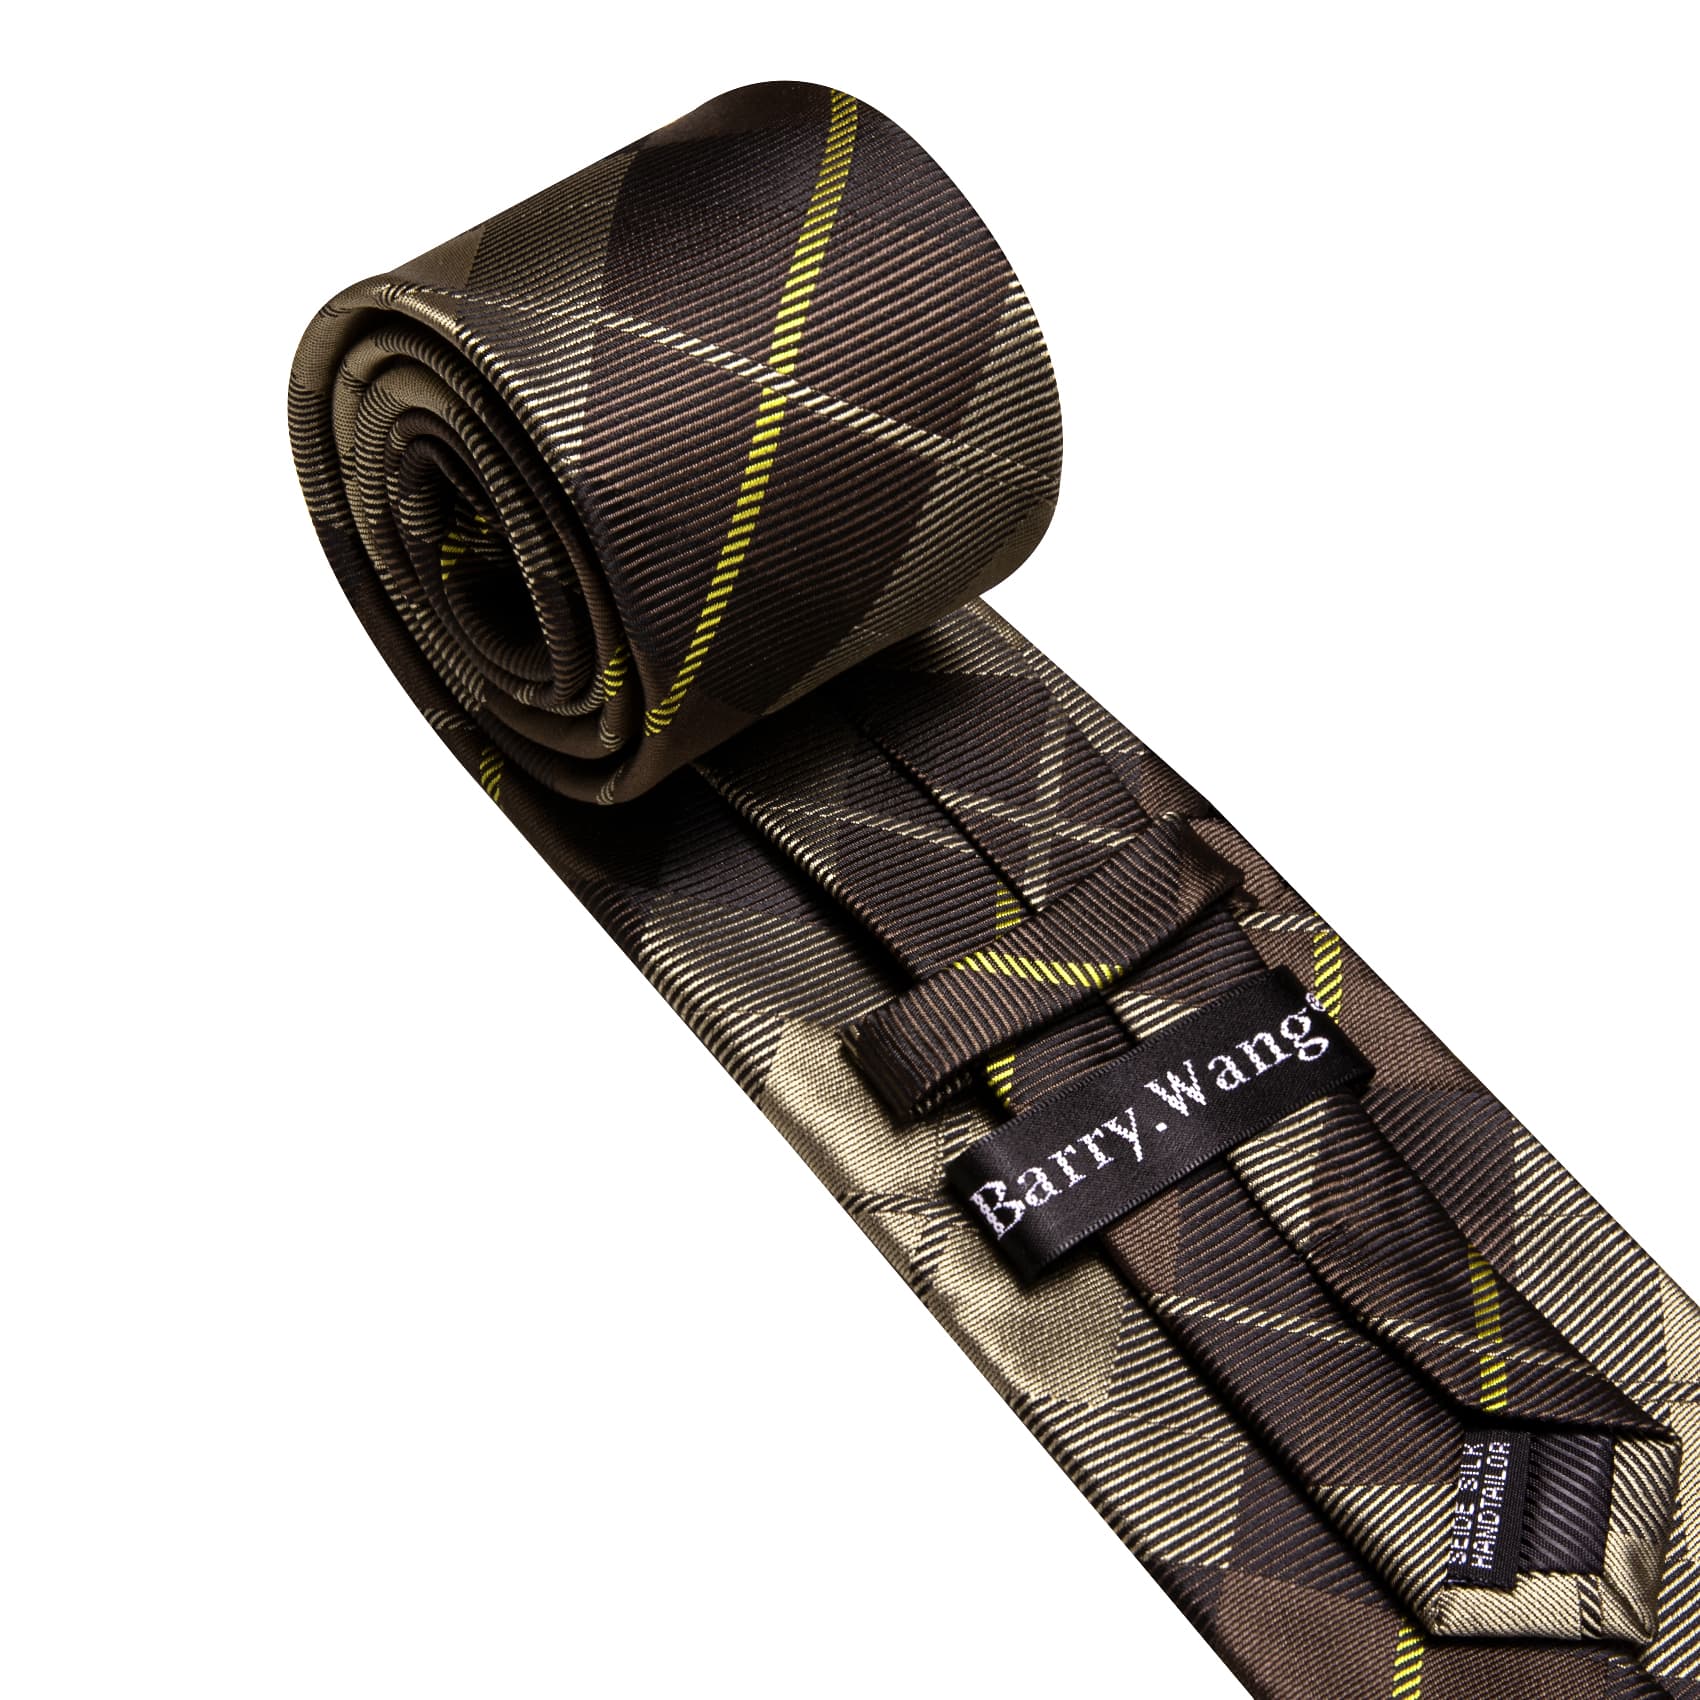 Plaid Tie Dark Brown Tan checkered Necktie and Cufflink Set